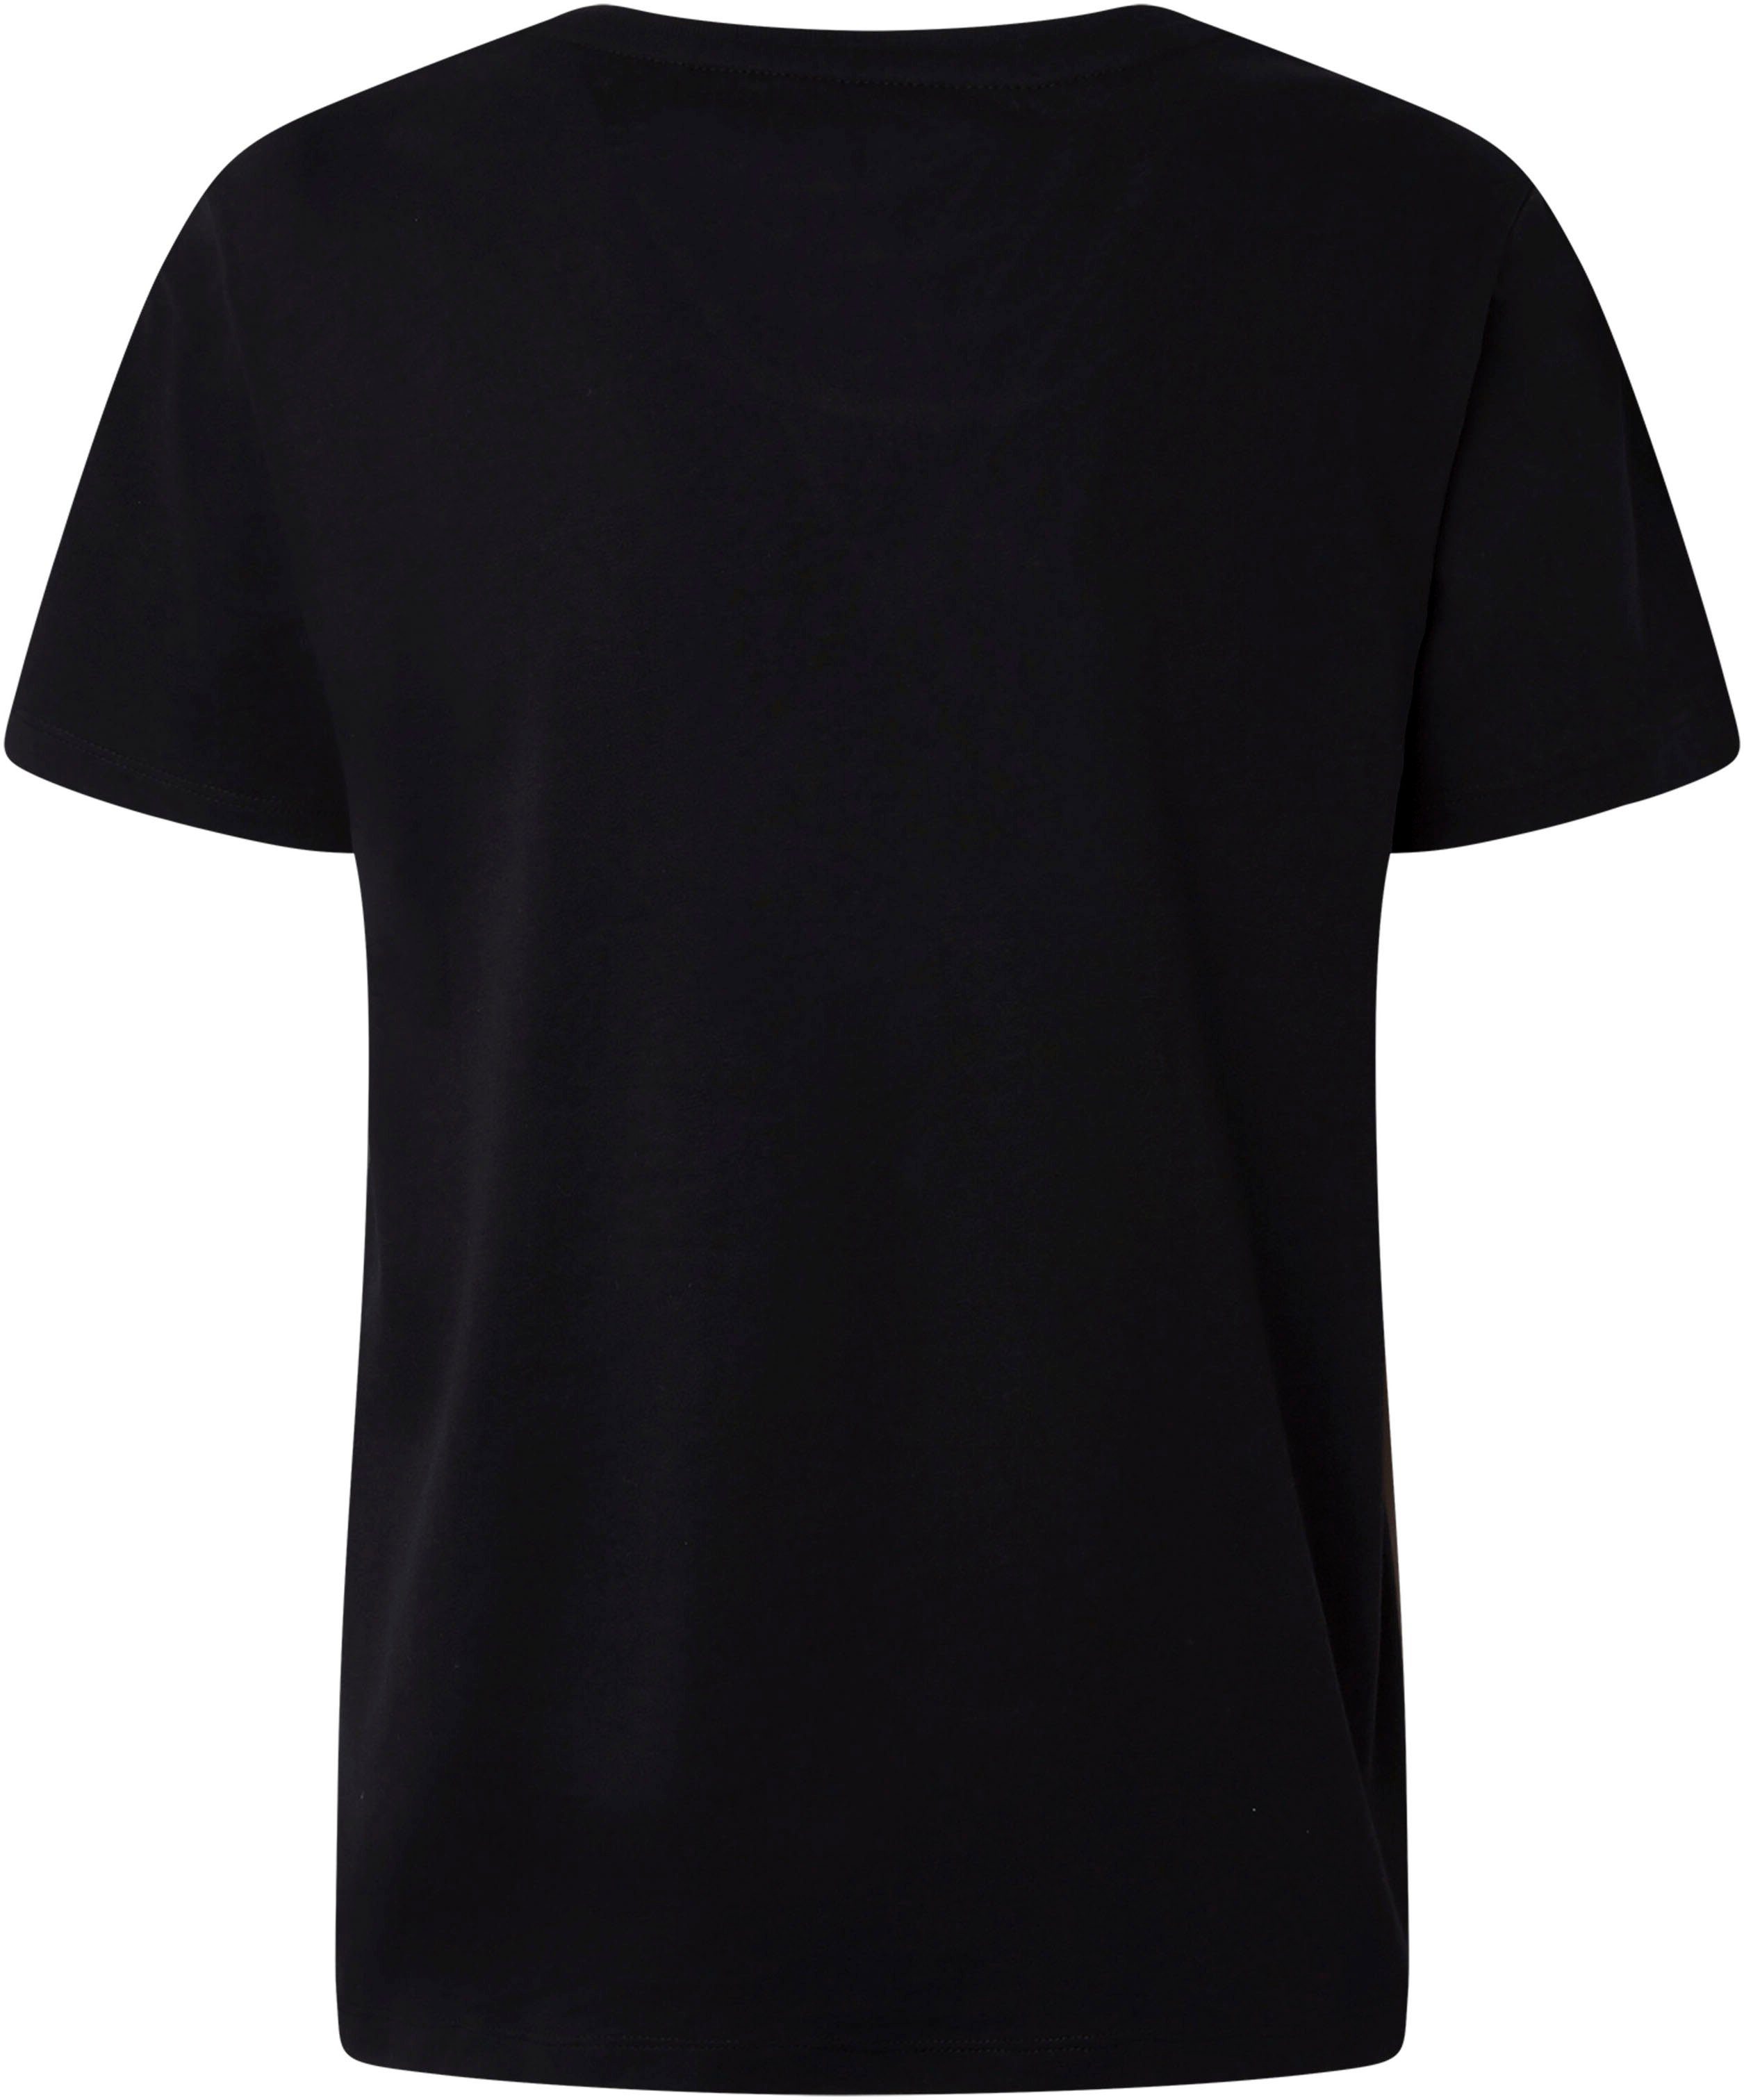 Pepe Jeans T-Shirt black Lali